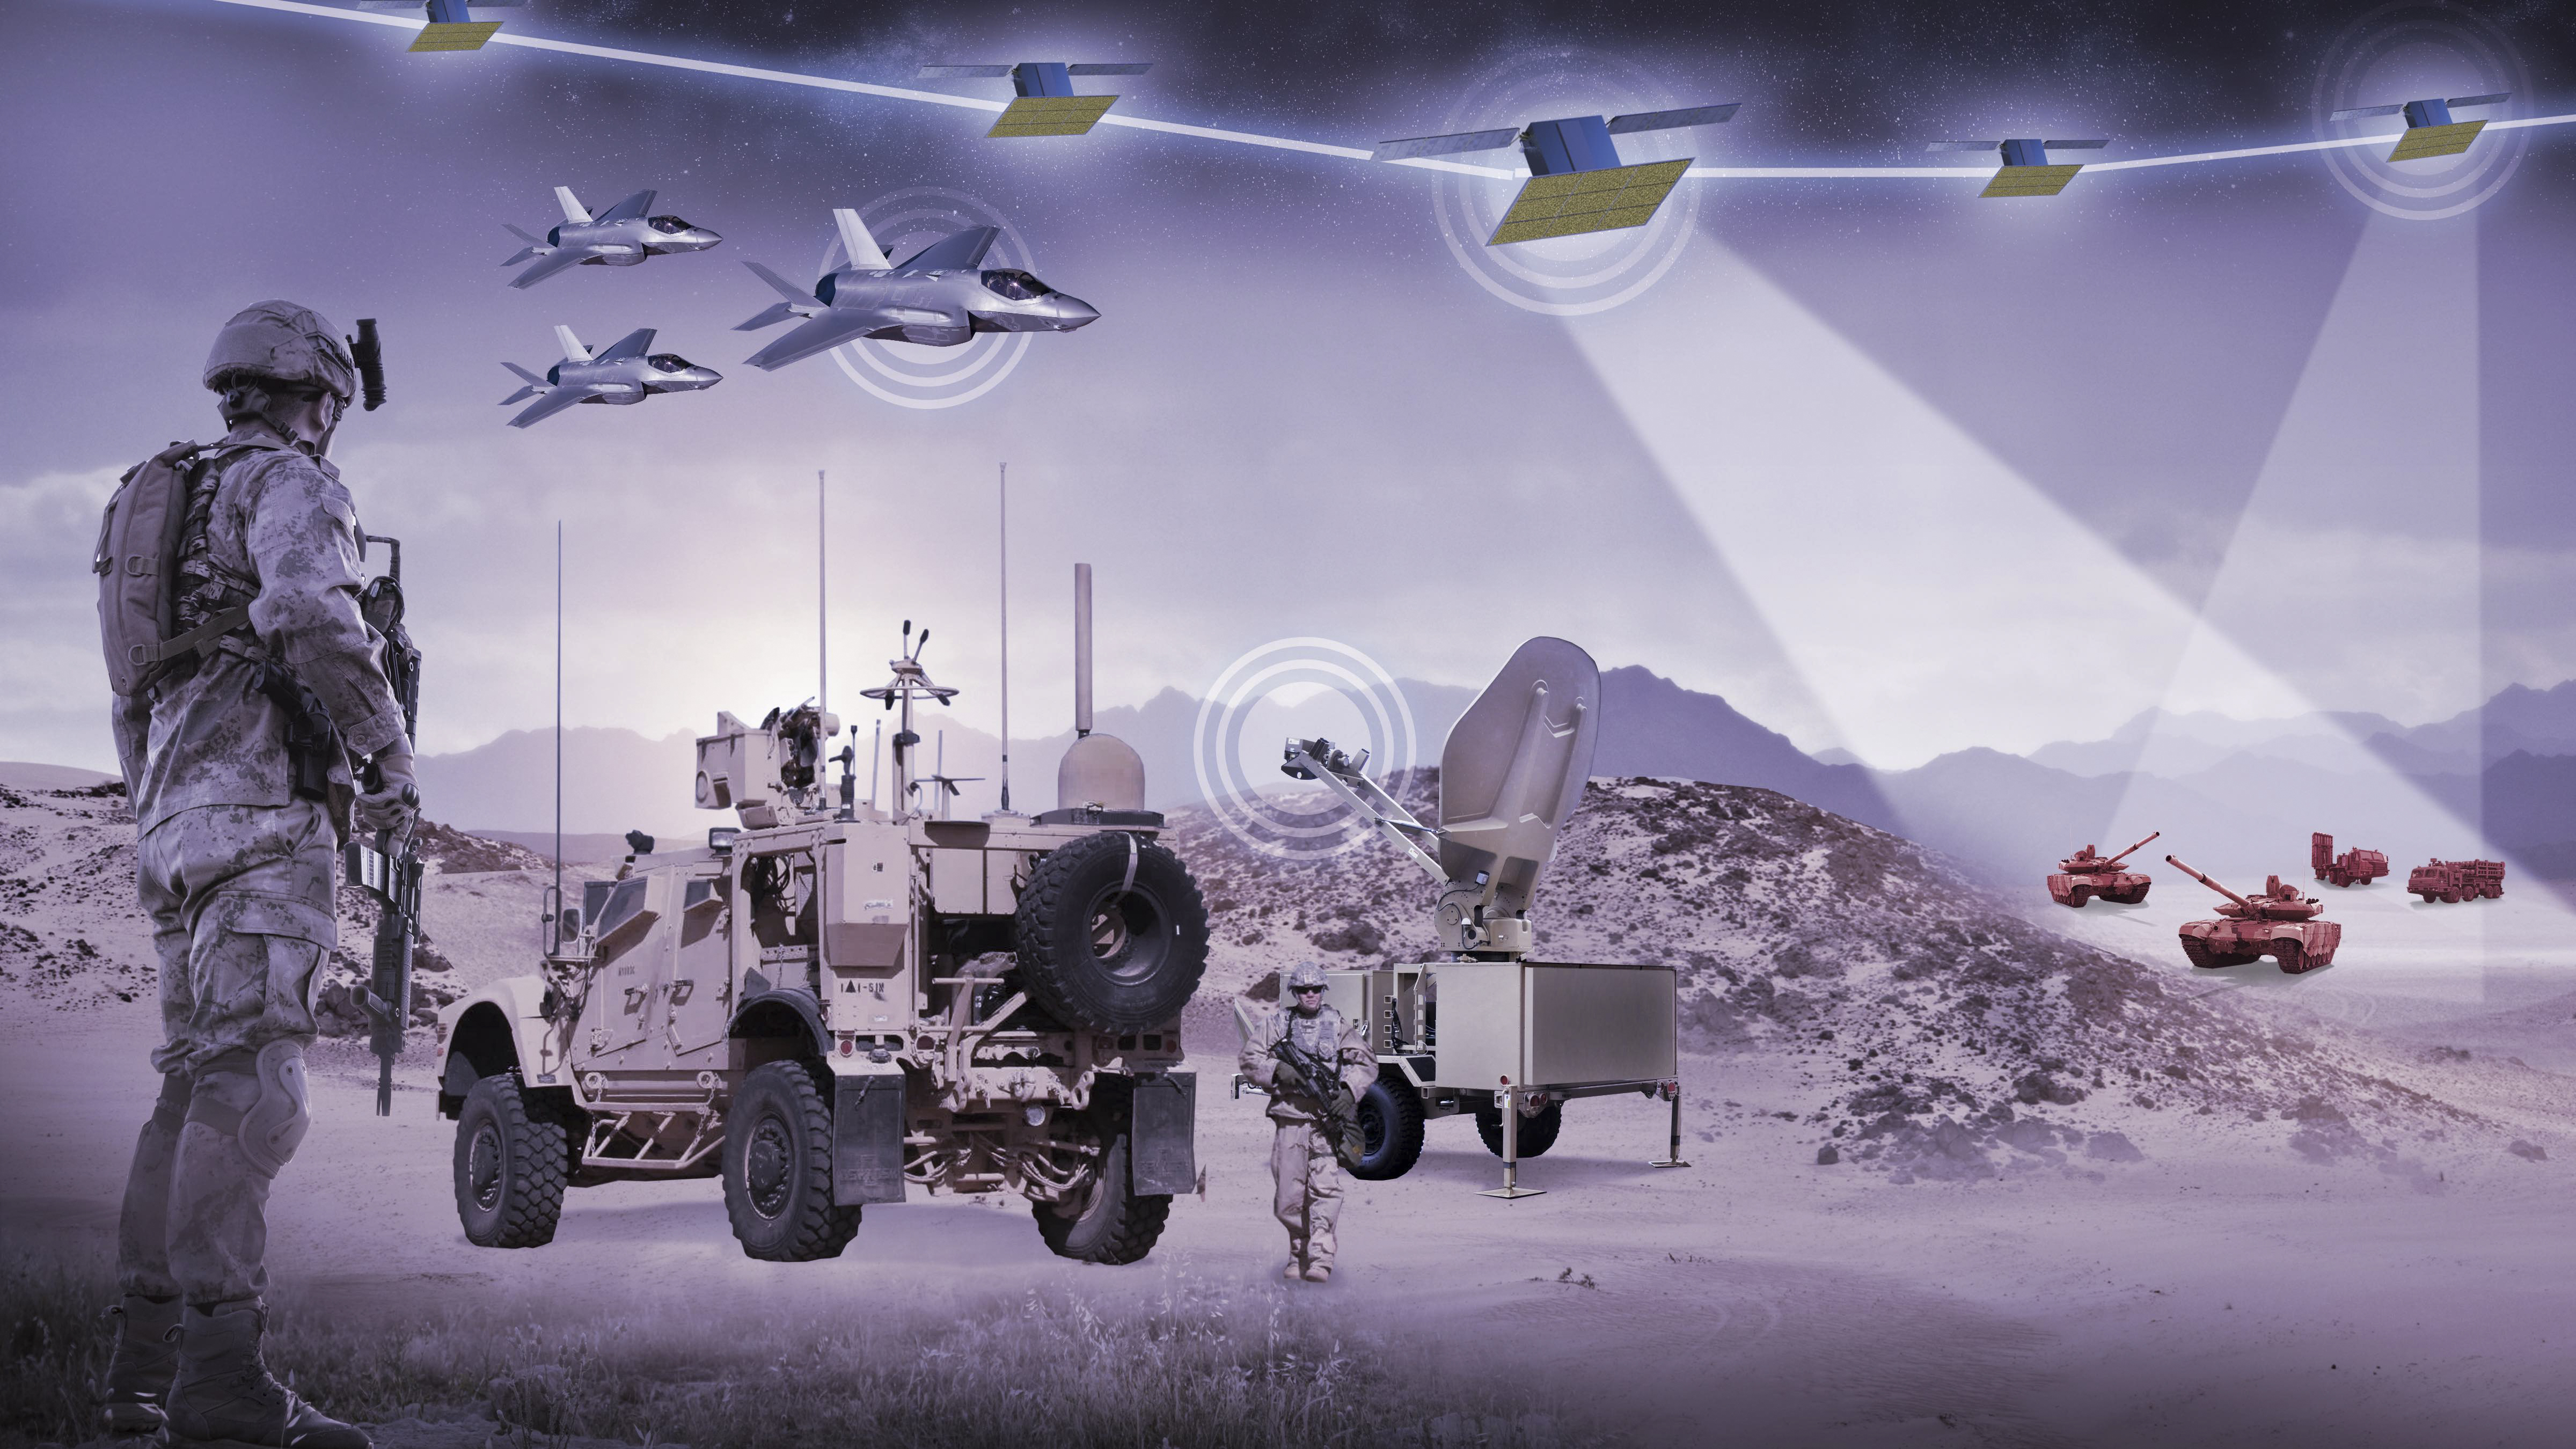 Tactiques, télécommunications, navigation, observation, les applications satellites au service des combattants font que l'espace est lui-même devenu un terrain pour mener bataille. © Lockheed Martin